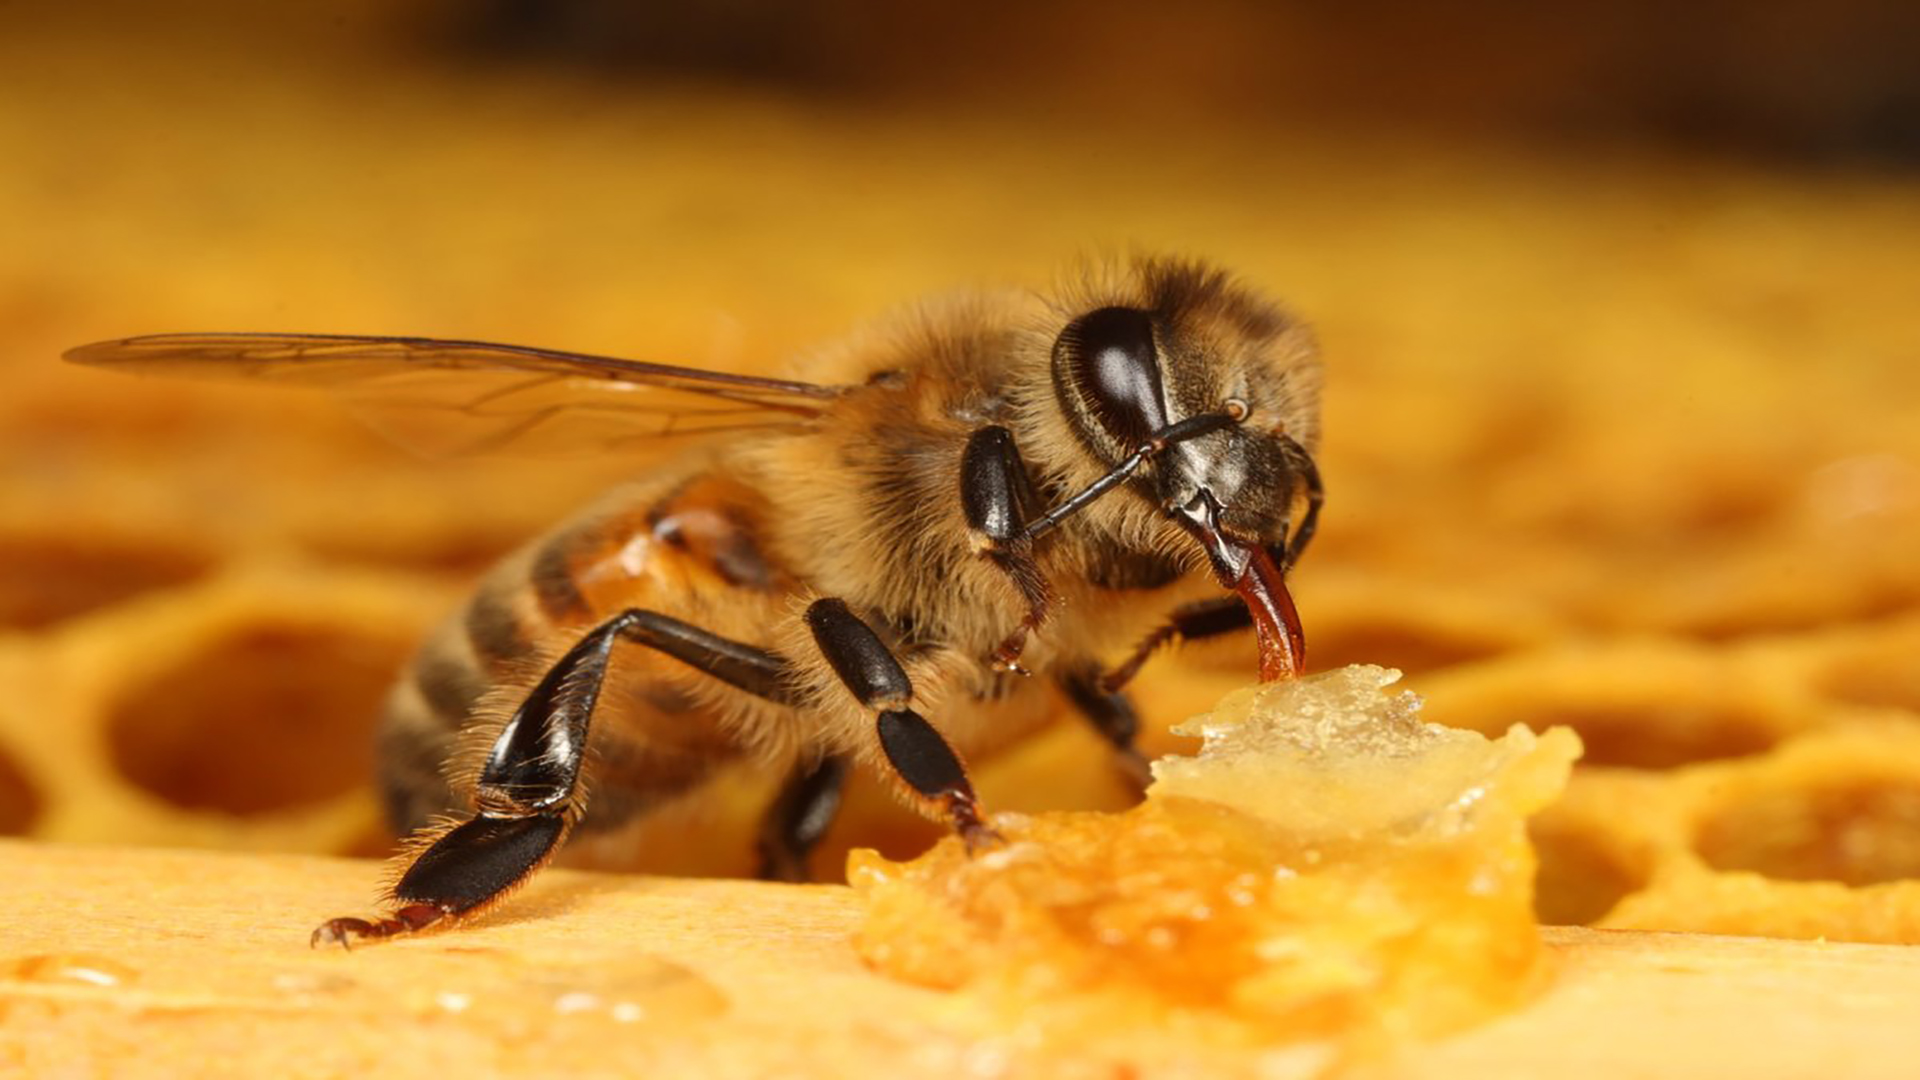 Пчеловодство апитерапия. Мандибулы пчелы. Яд пчелы. Пчелиный яд апитерапия.